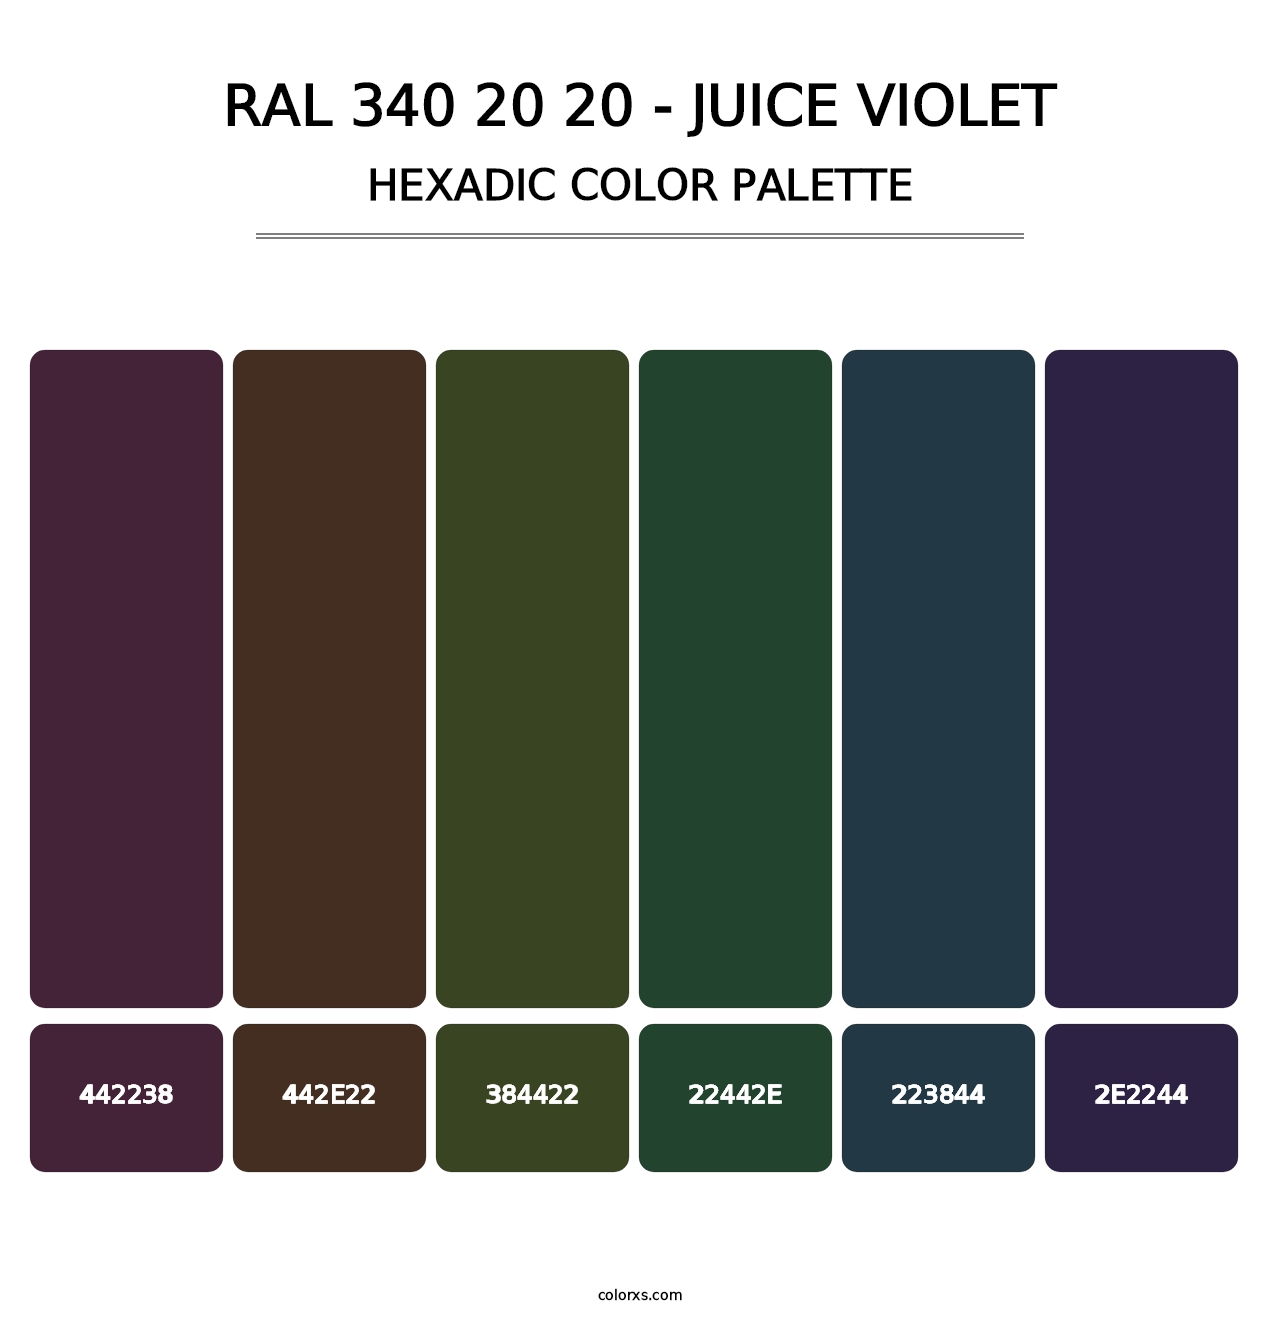 RAL 340 20 20 - Juice Violet - Hexadic Color Palette